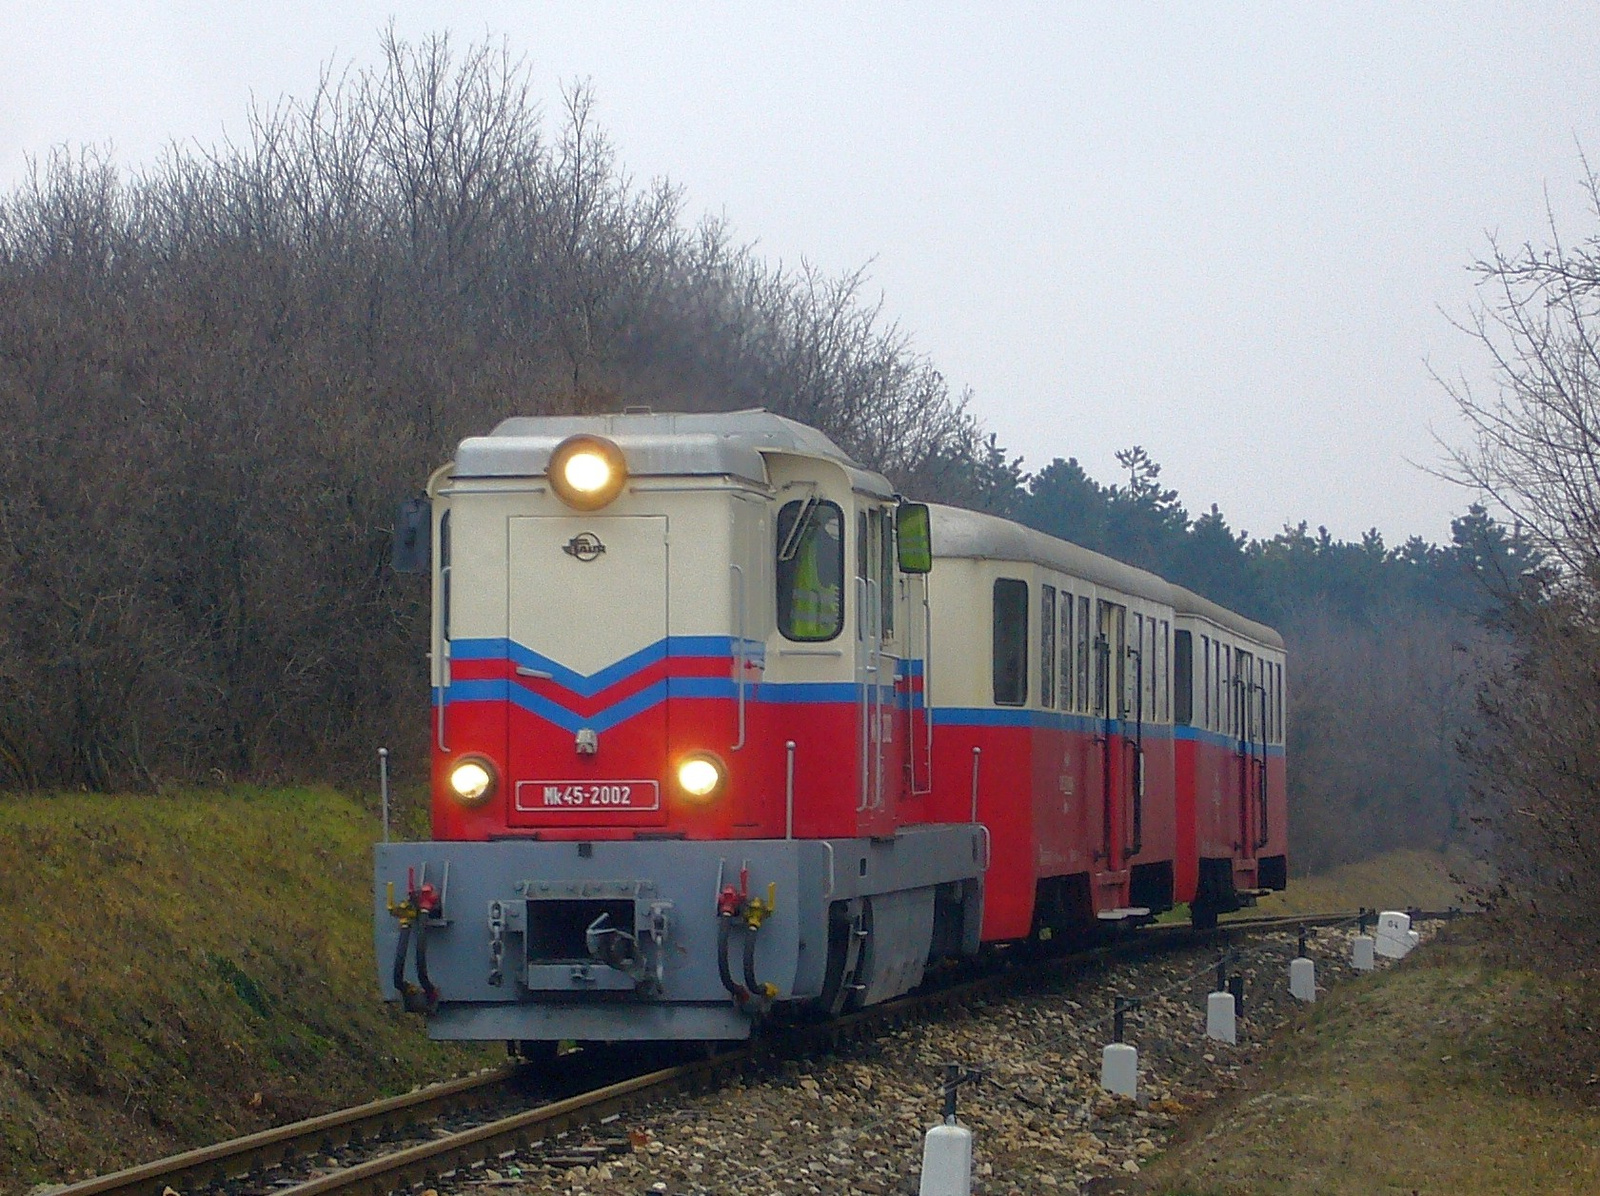 Mk45 2002 - Széchenyihegy